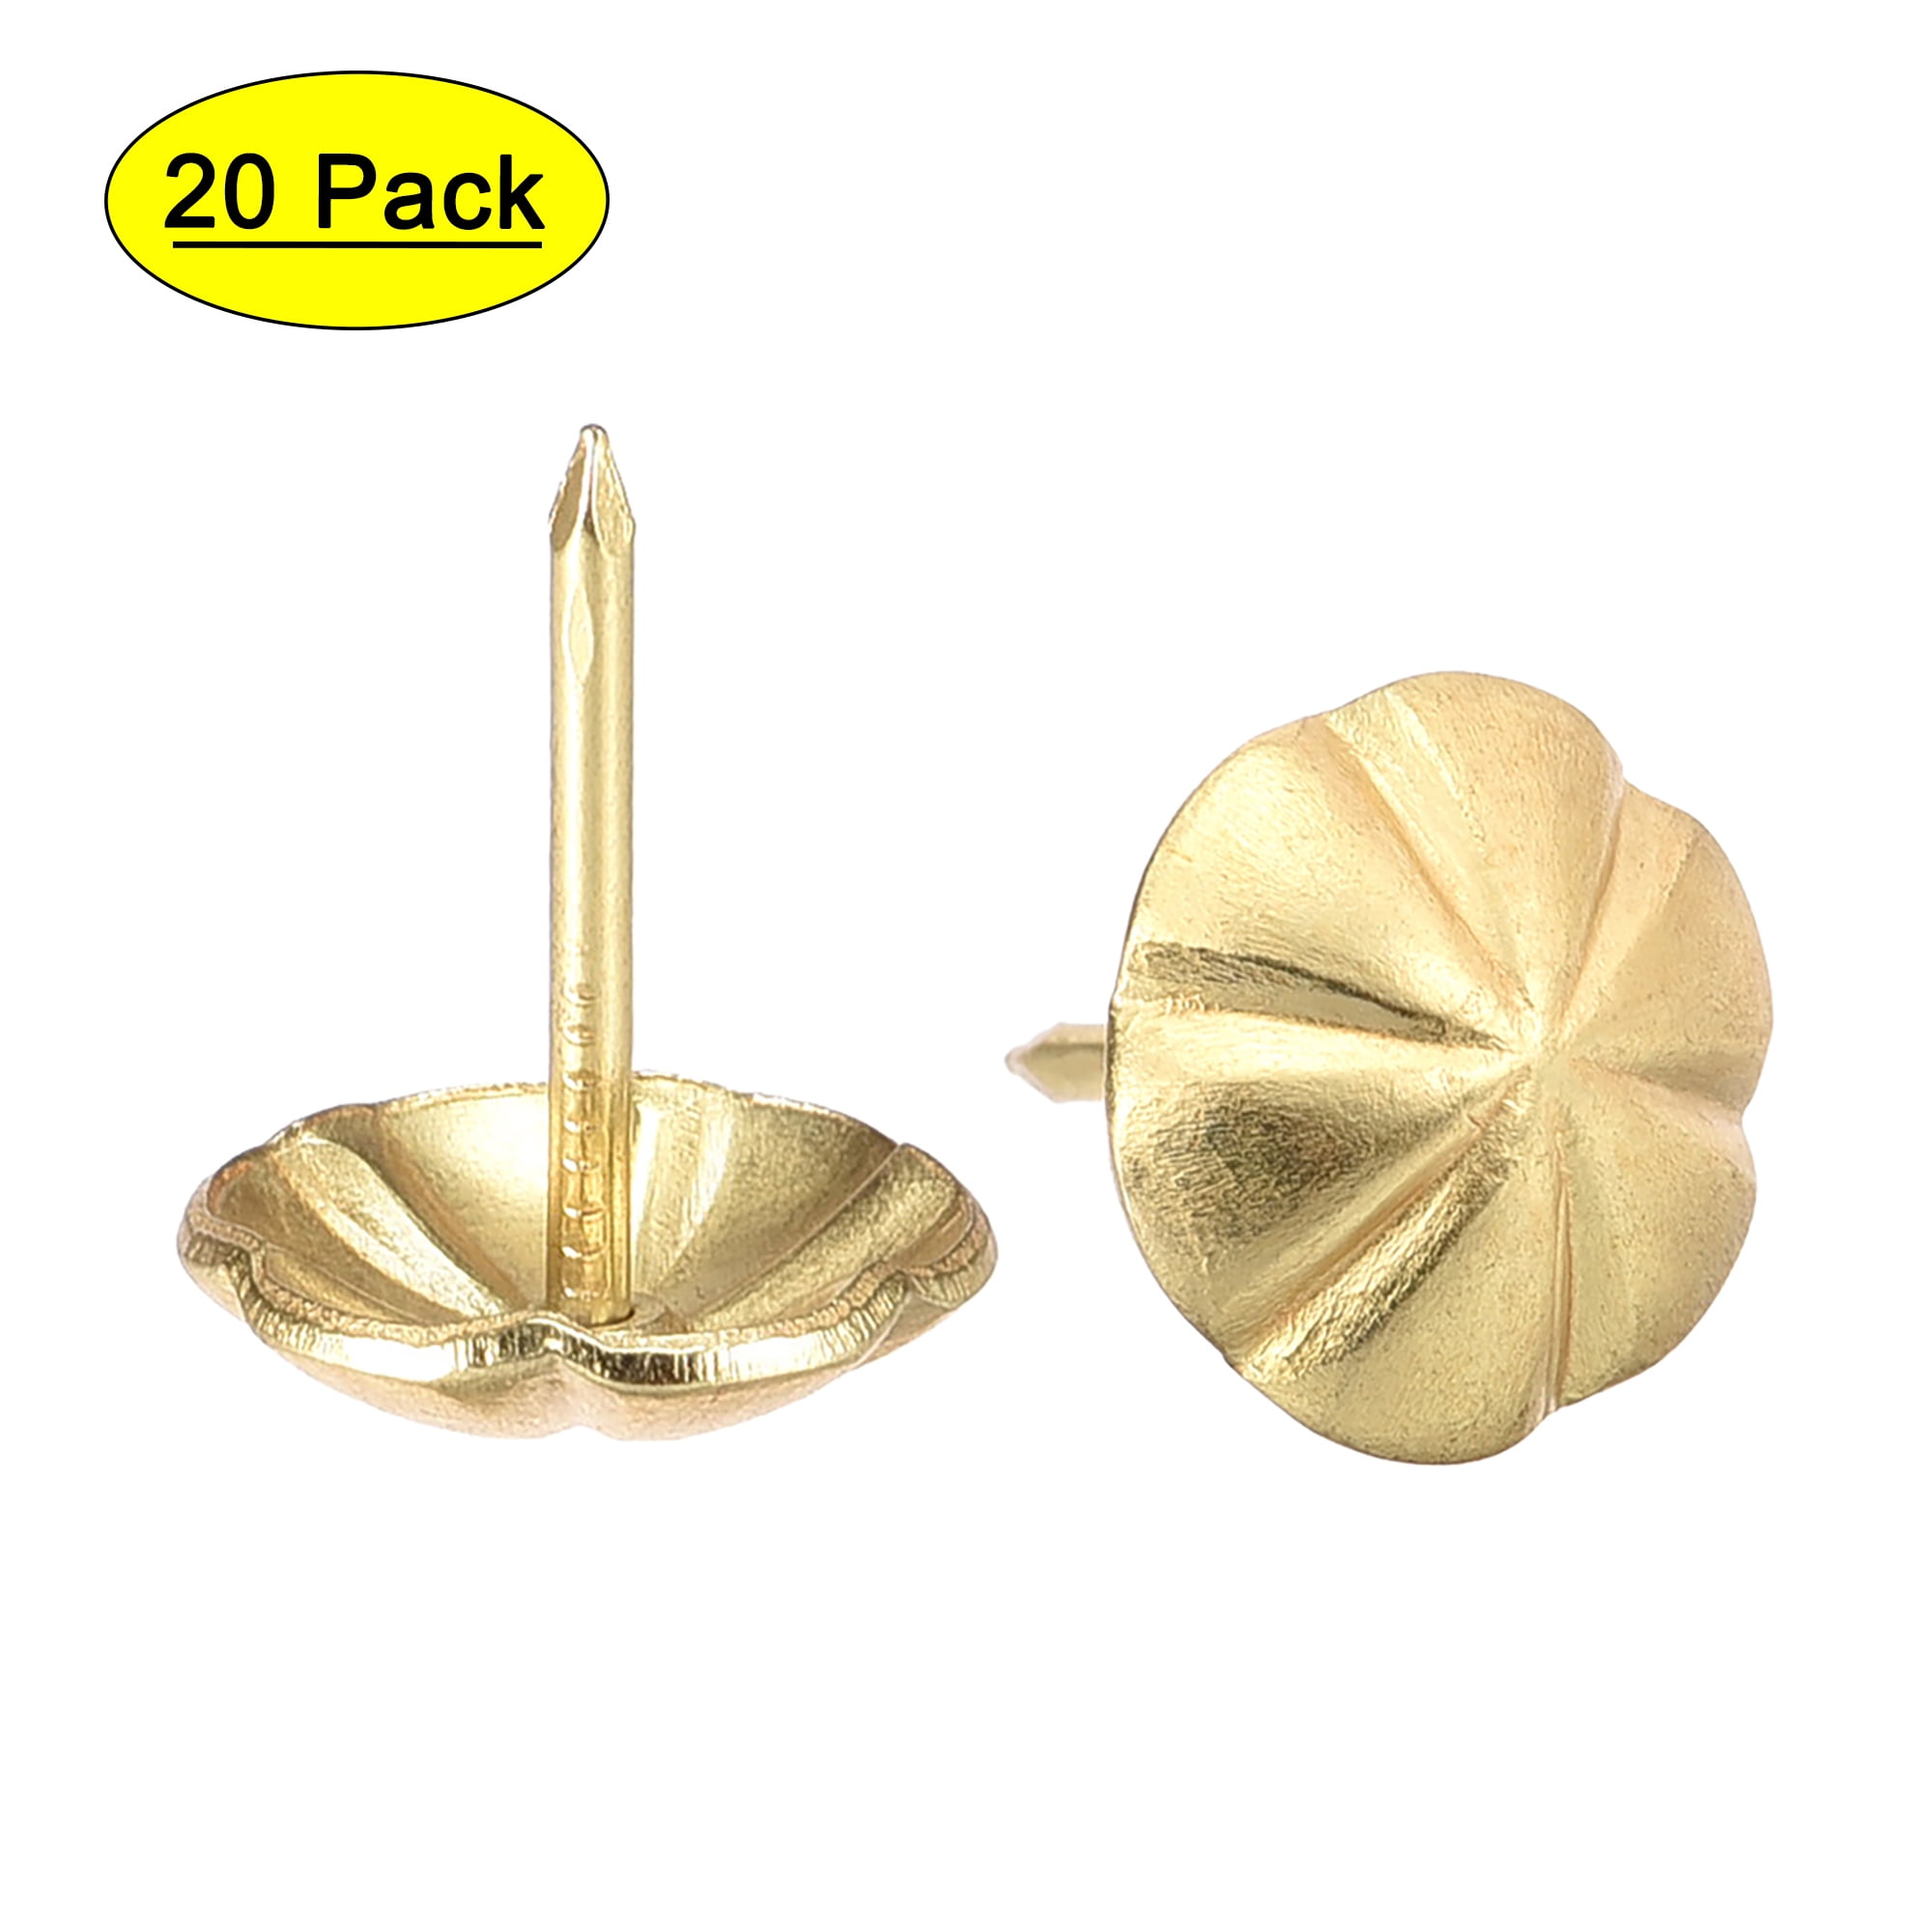 THANKSGIVING Push Pins Set of 8 Handmade Decorative Memo Thumb Tacks 